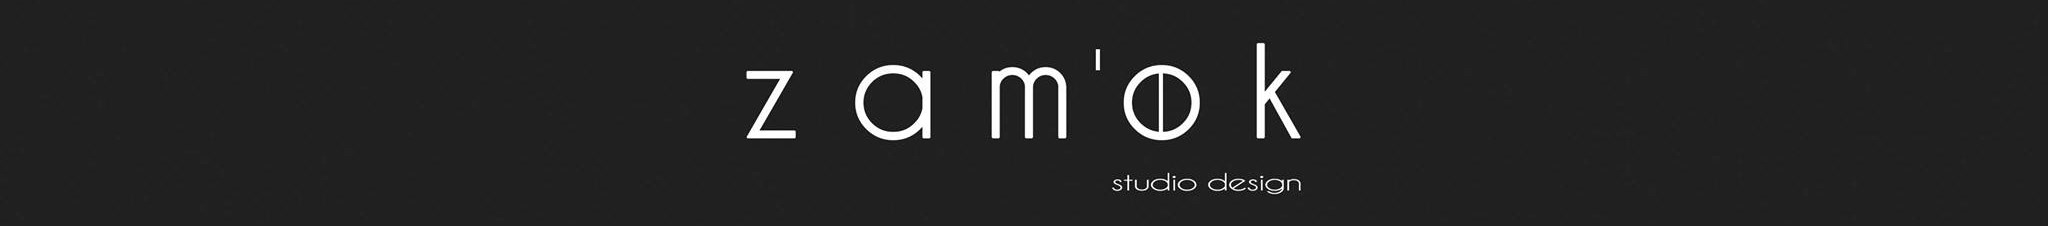 ZAM'OK studio design profil başlığı